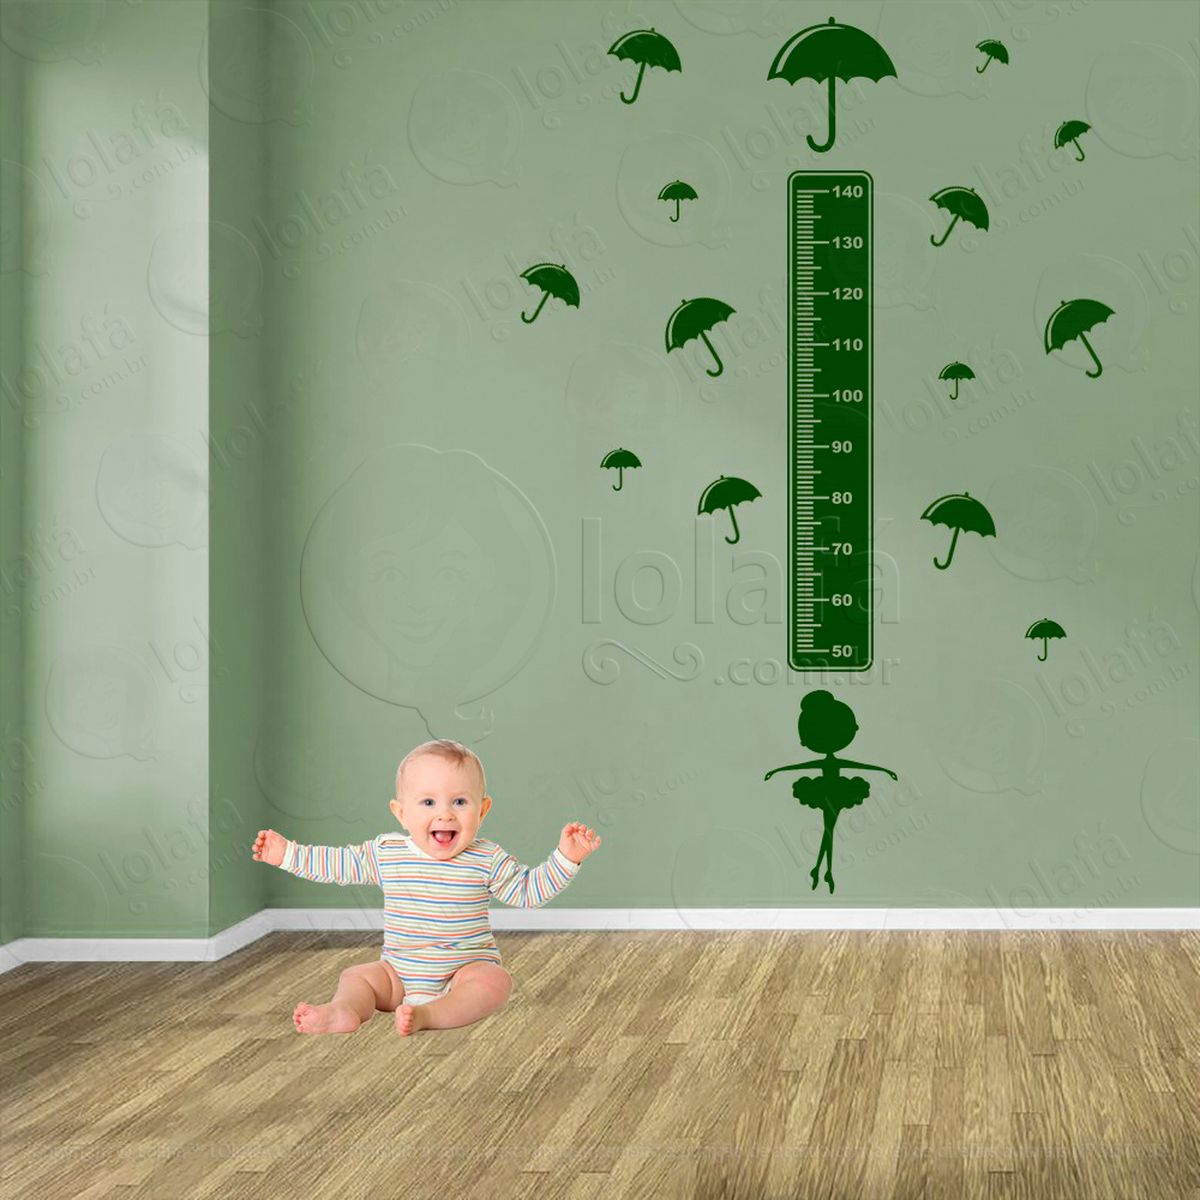 balé e guarda-chuvas adesivo régua de crescimento infantil, medidor de altura para quarto, porta e parede - mod:491